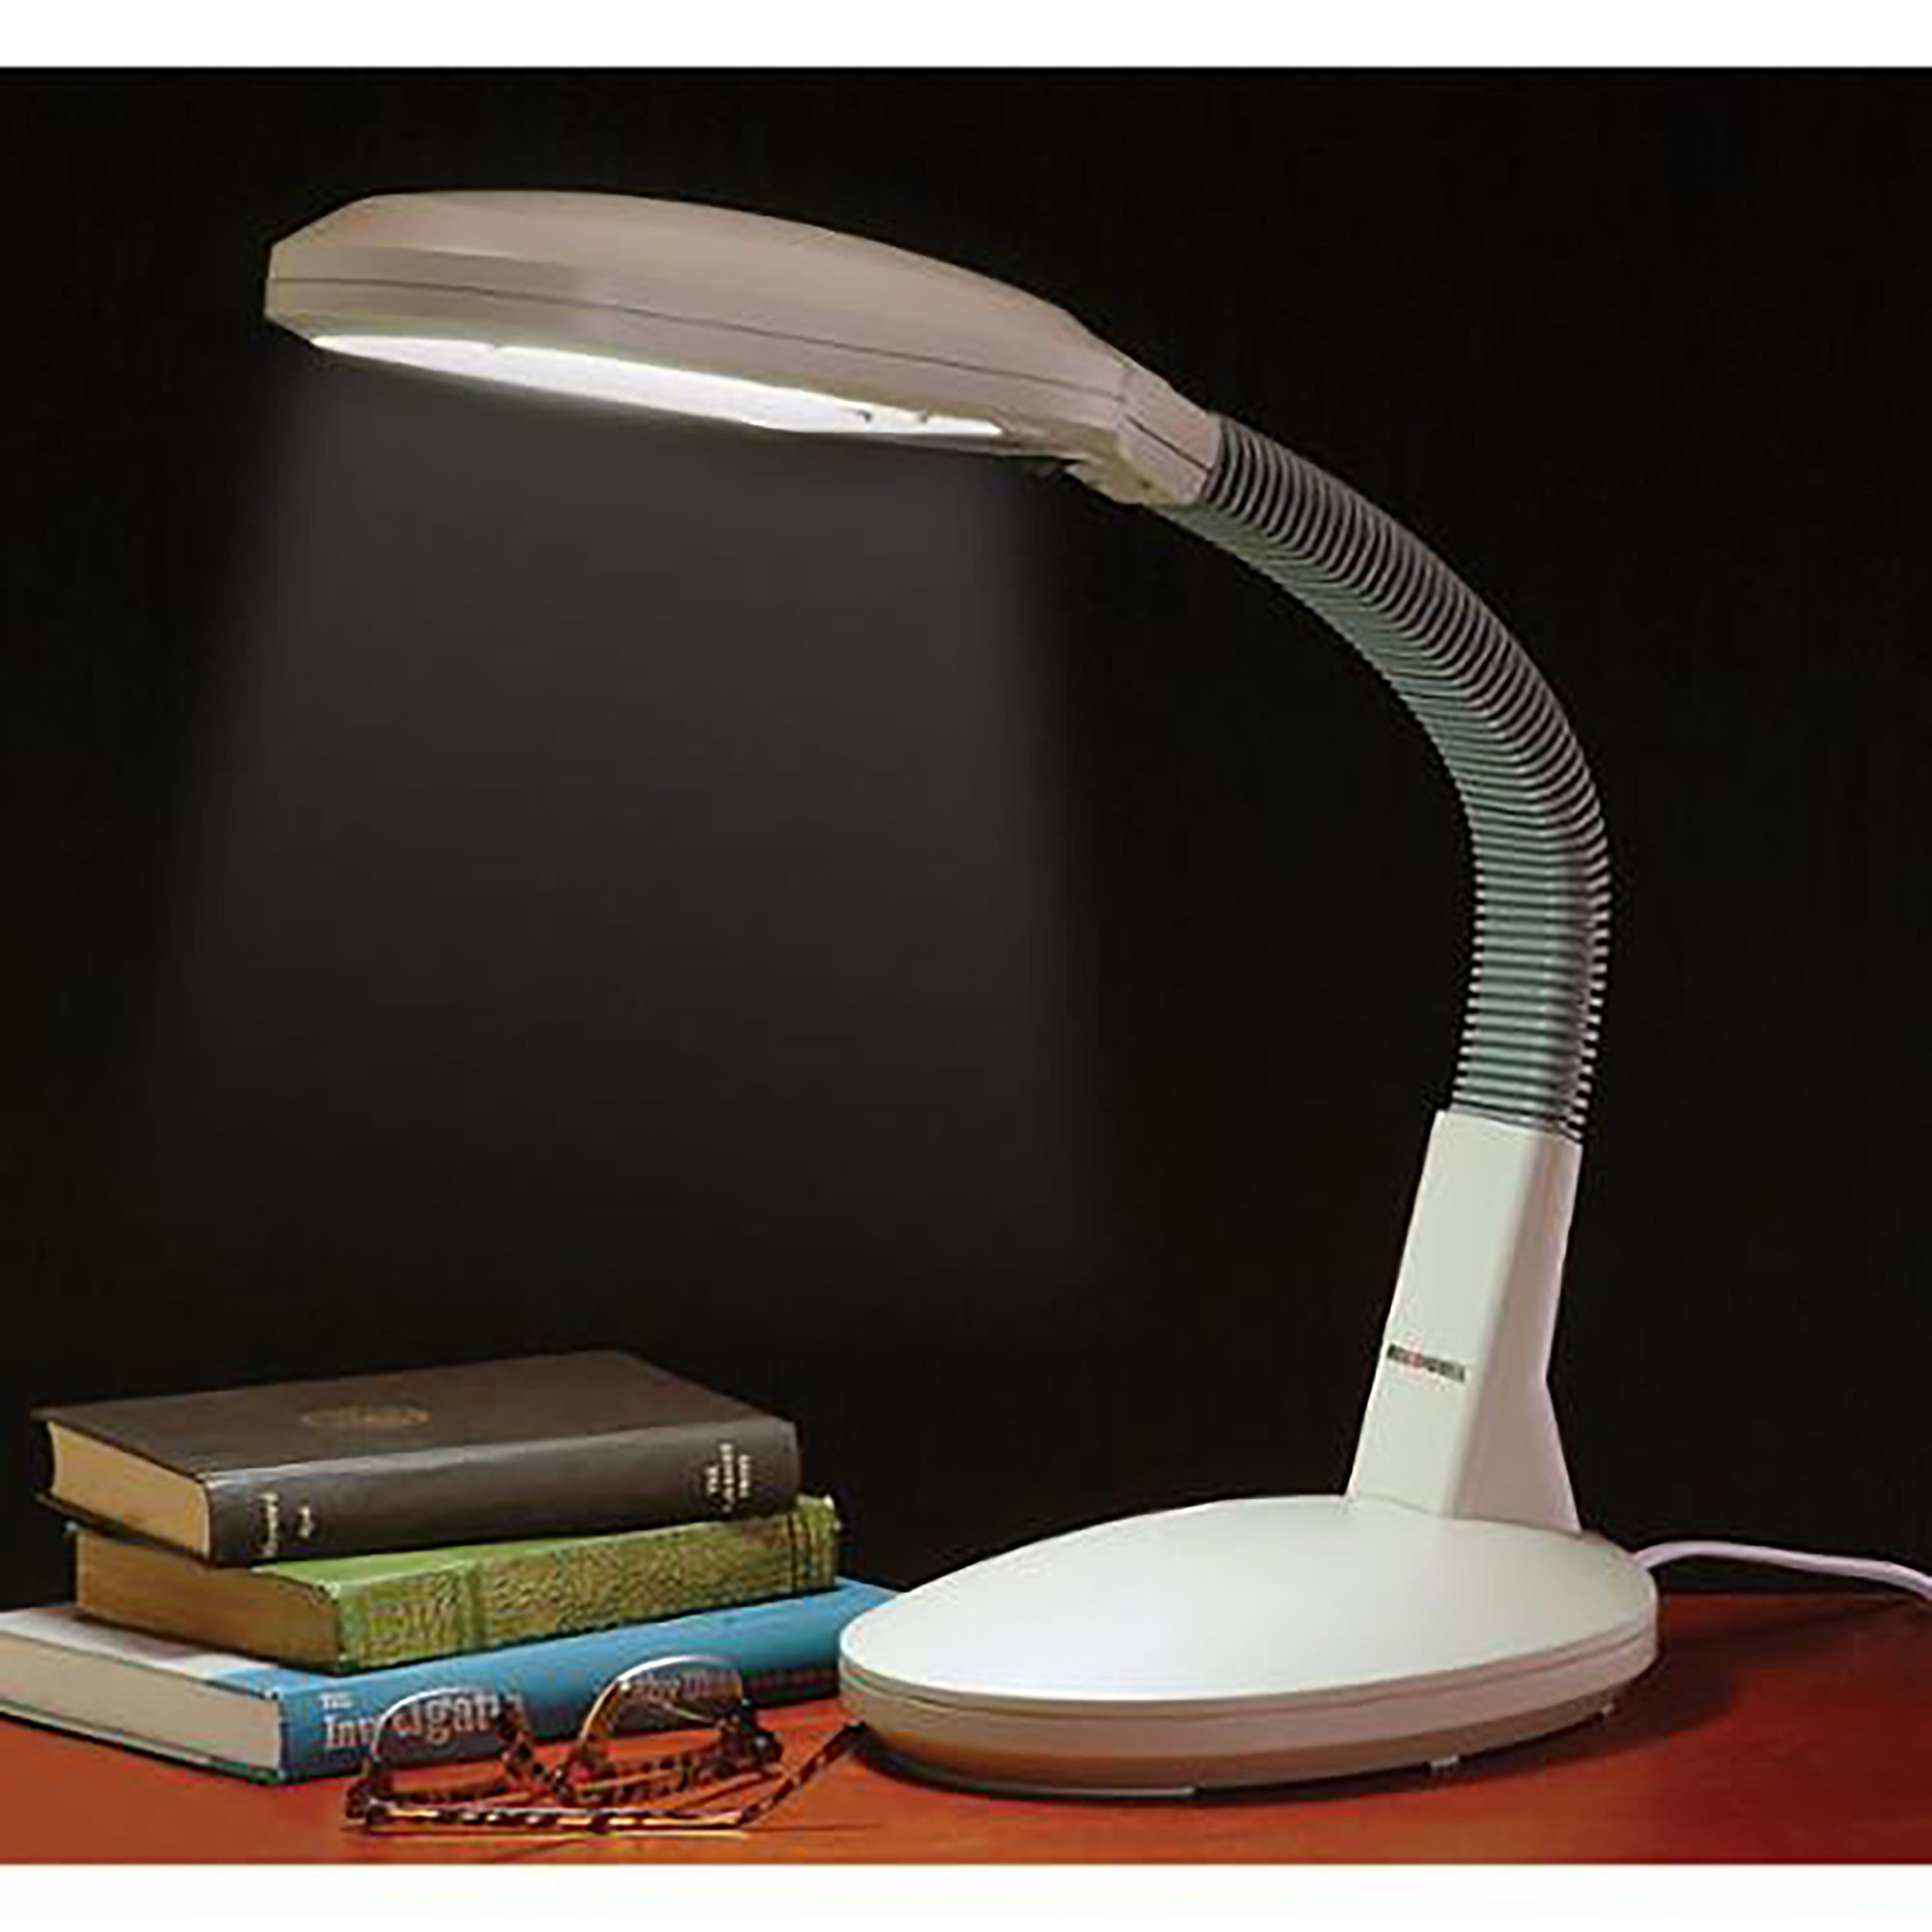 Bell + Howell 1300 Lumen Desktop Lamp